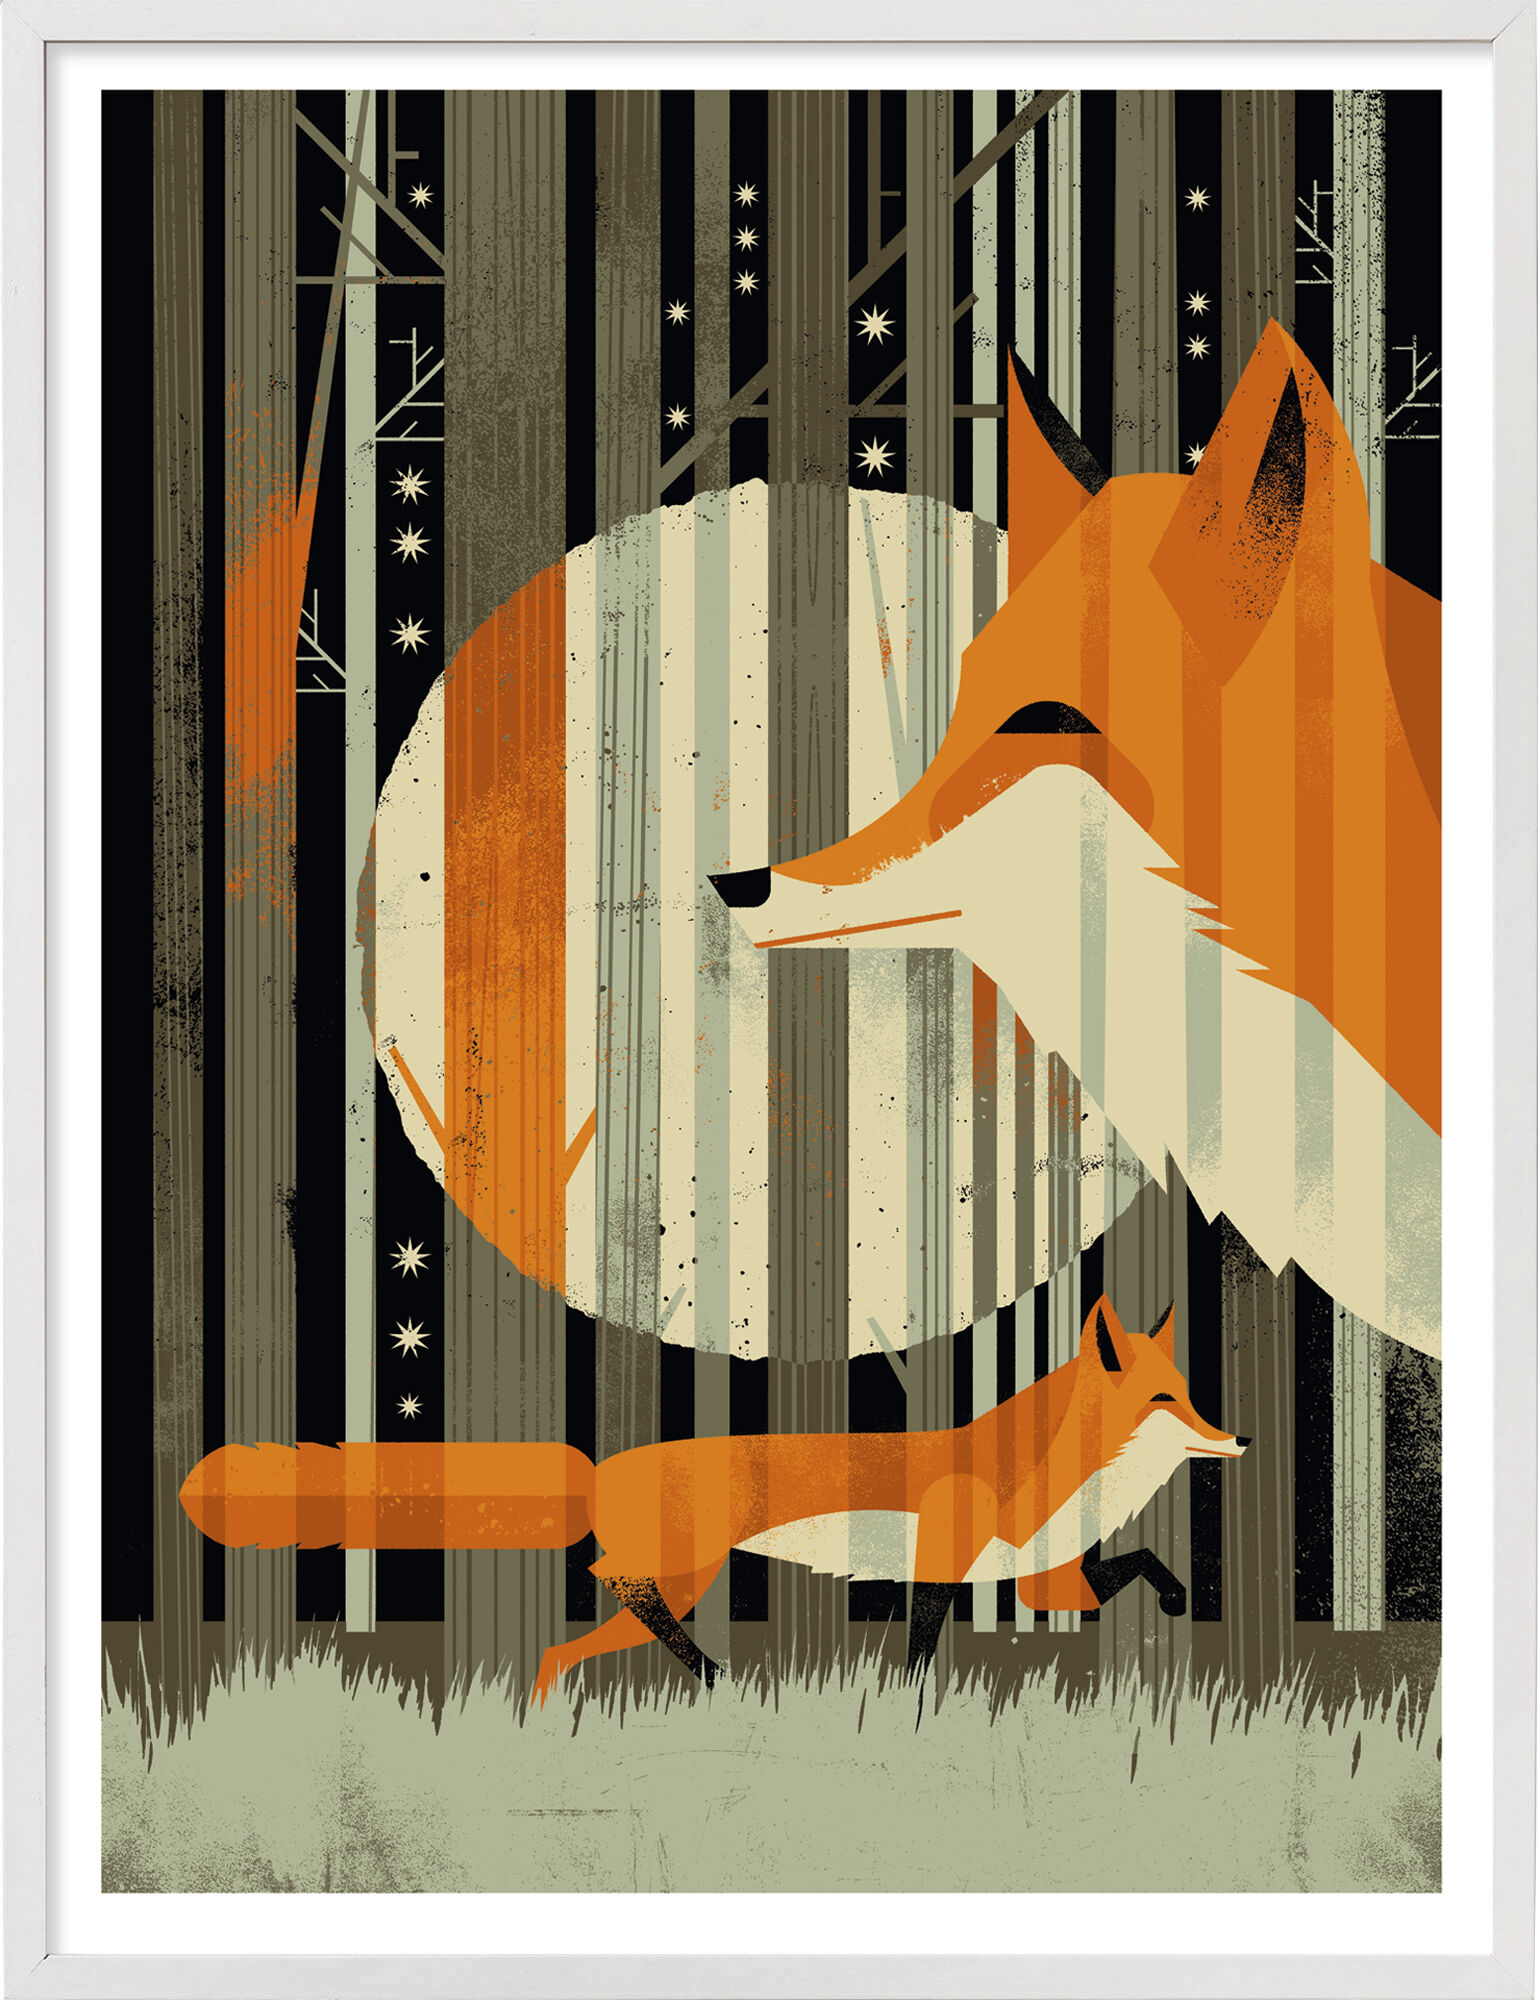 Picture "Fox" (2015) by Dieter Braun